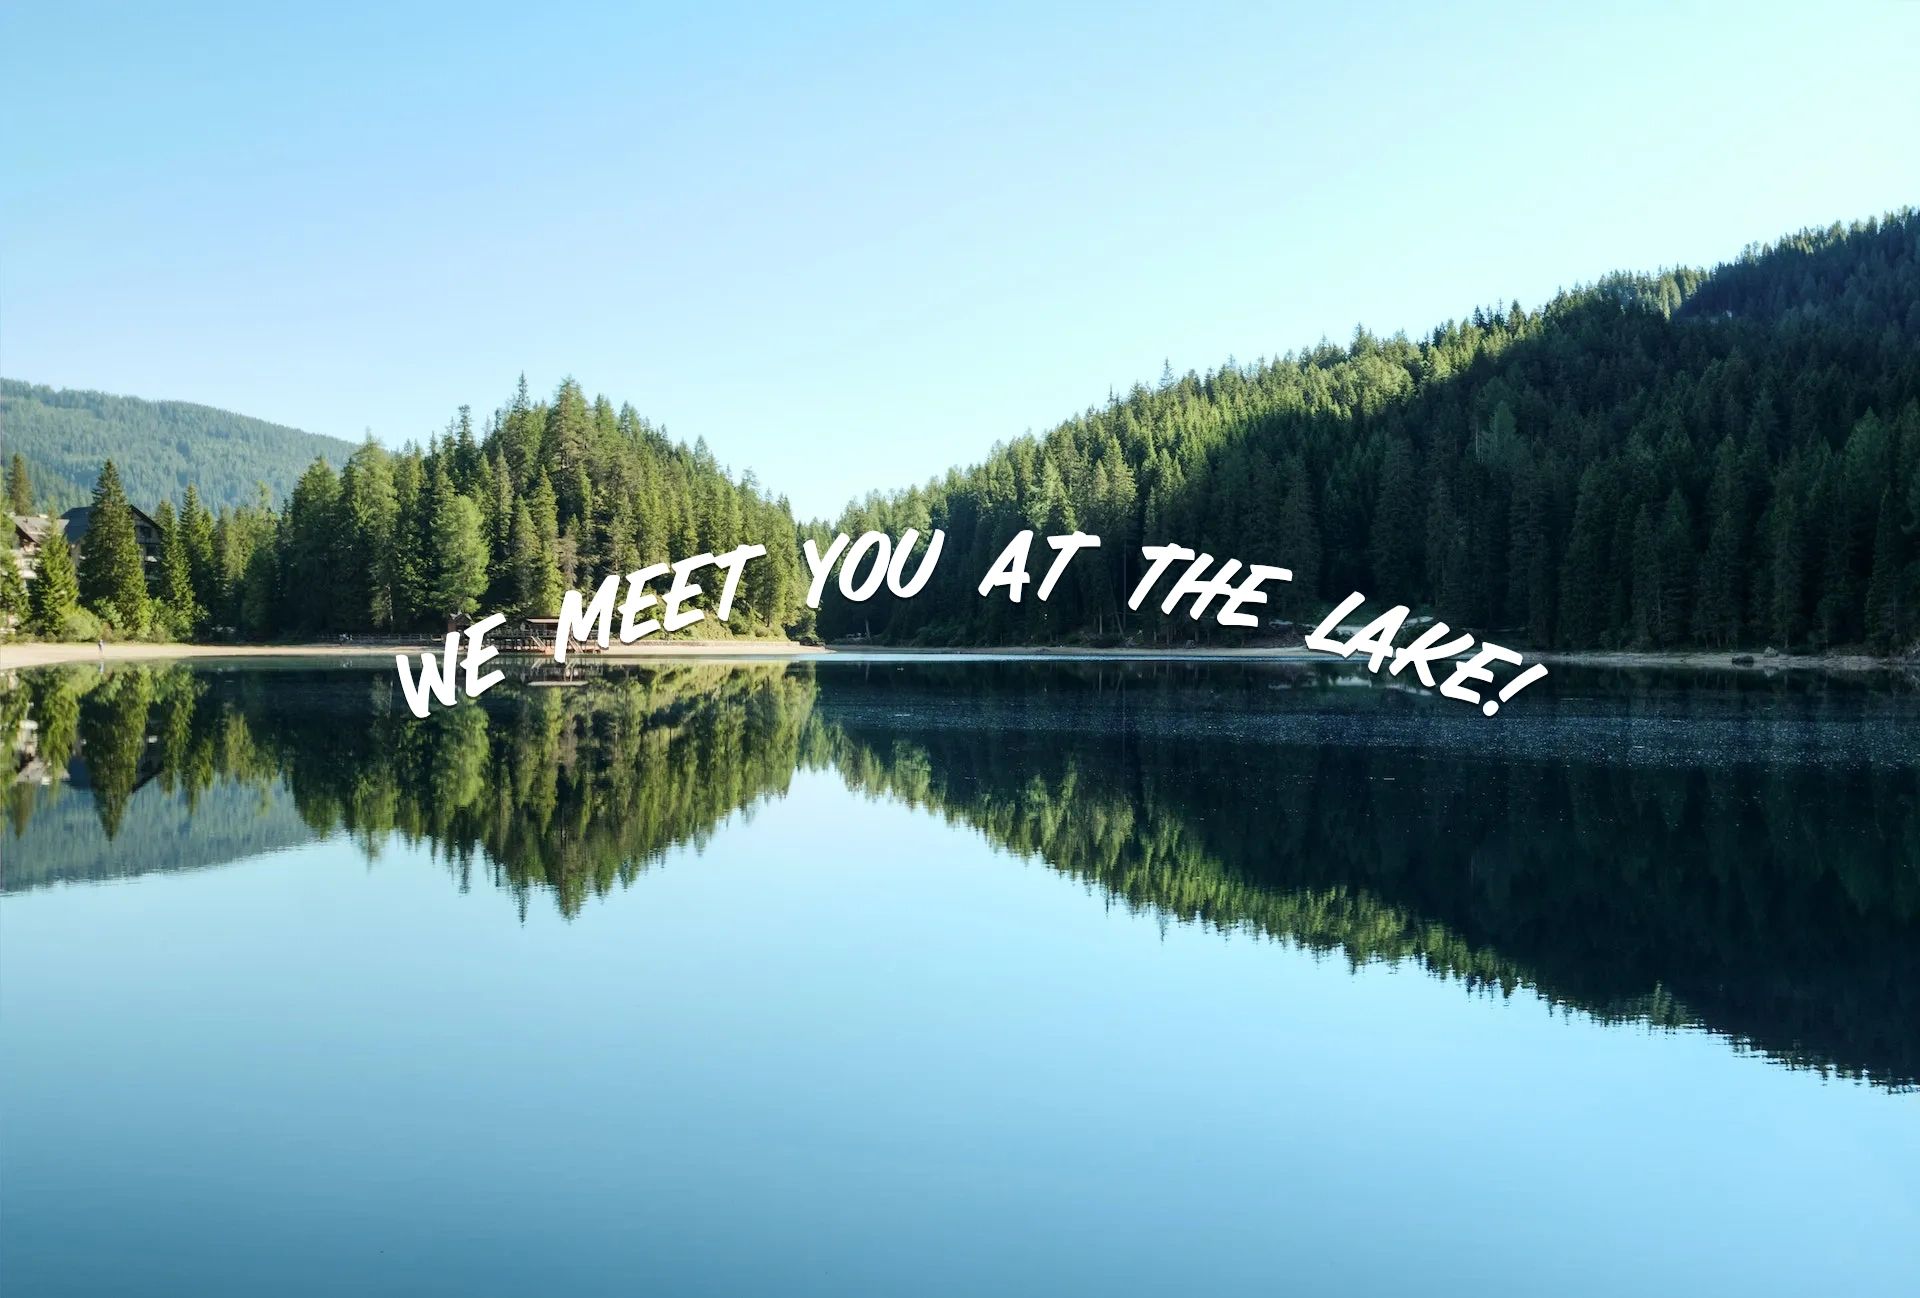 We Meet You At The Lake!